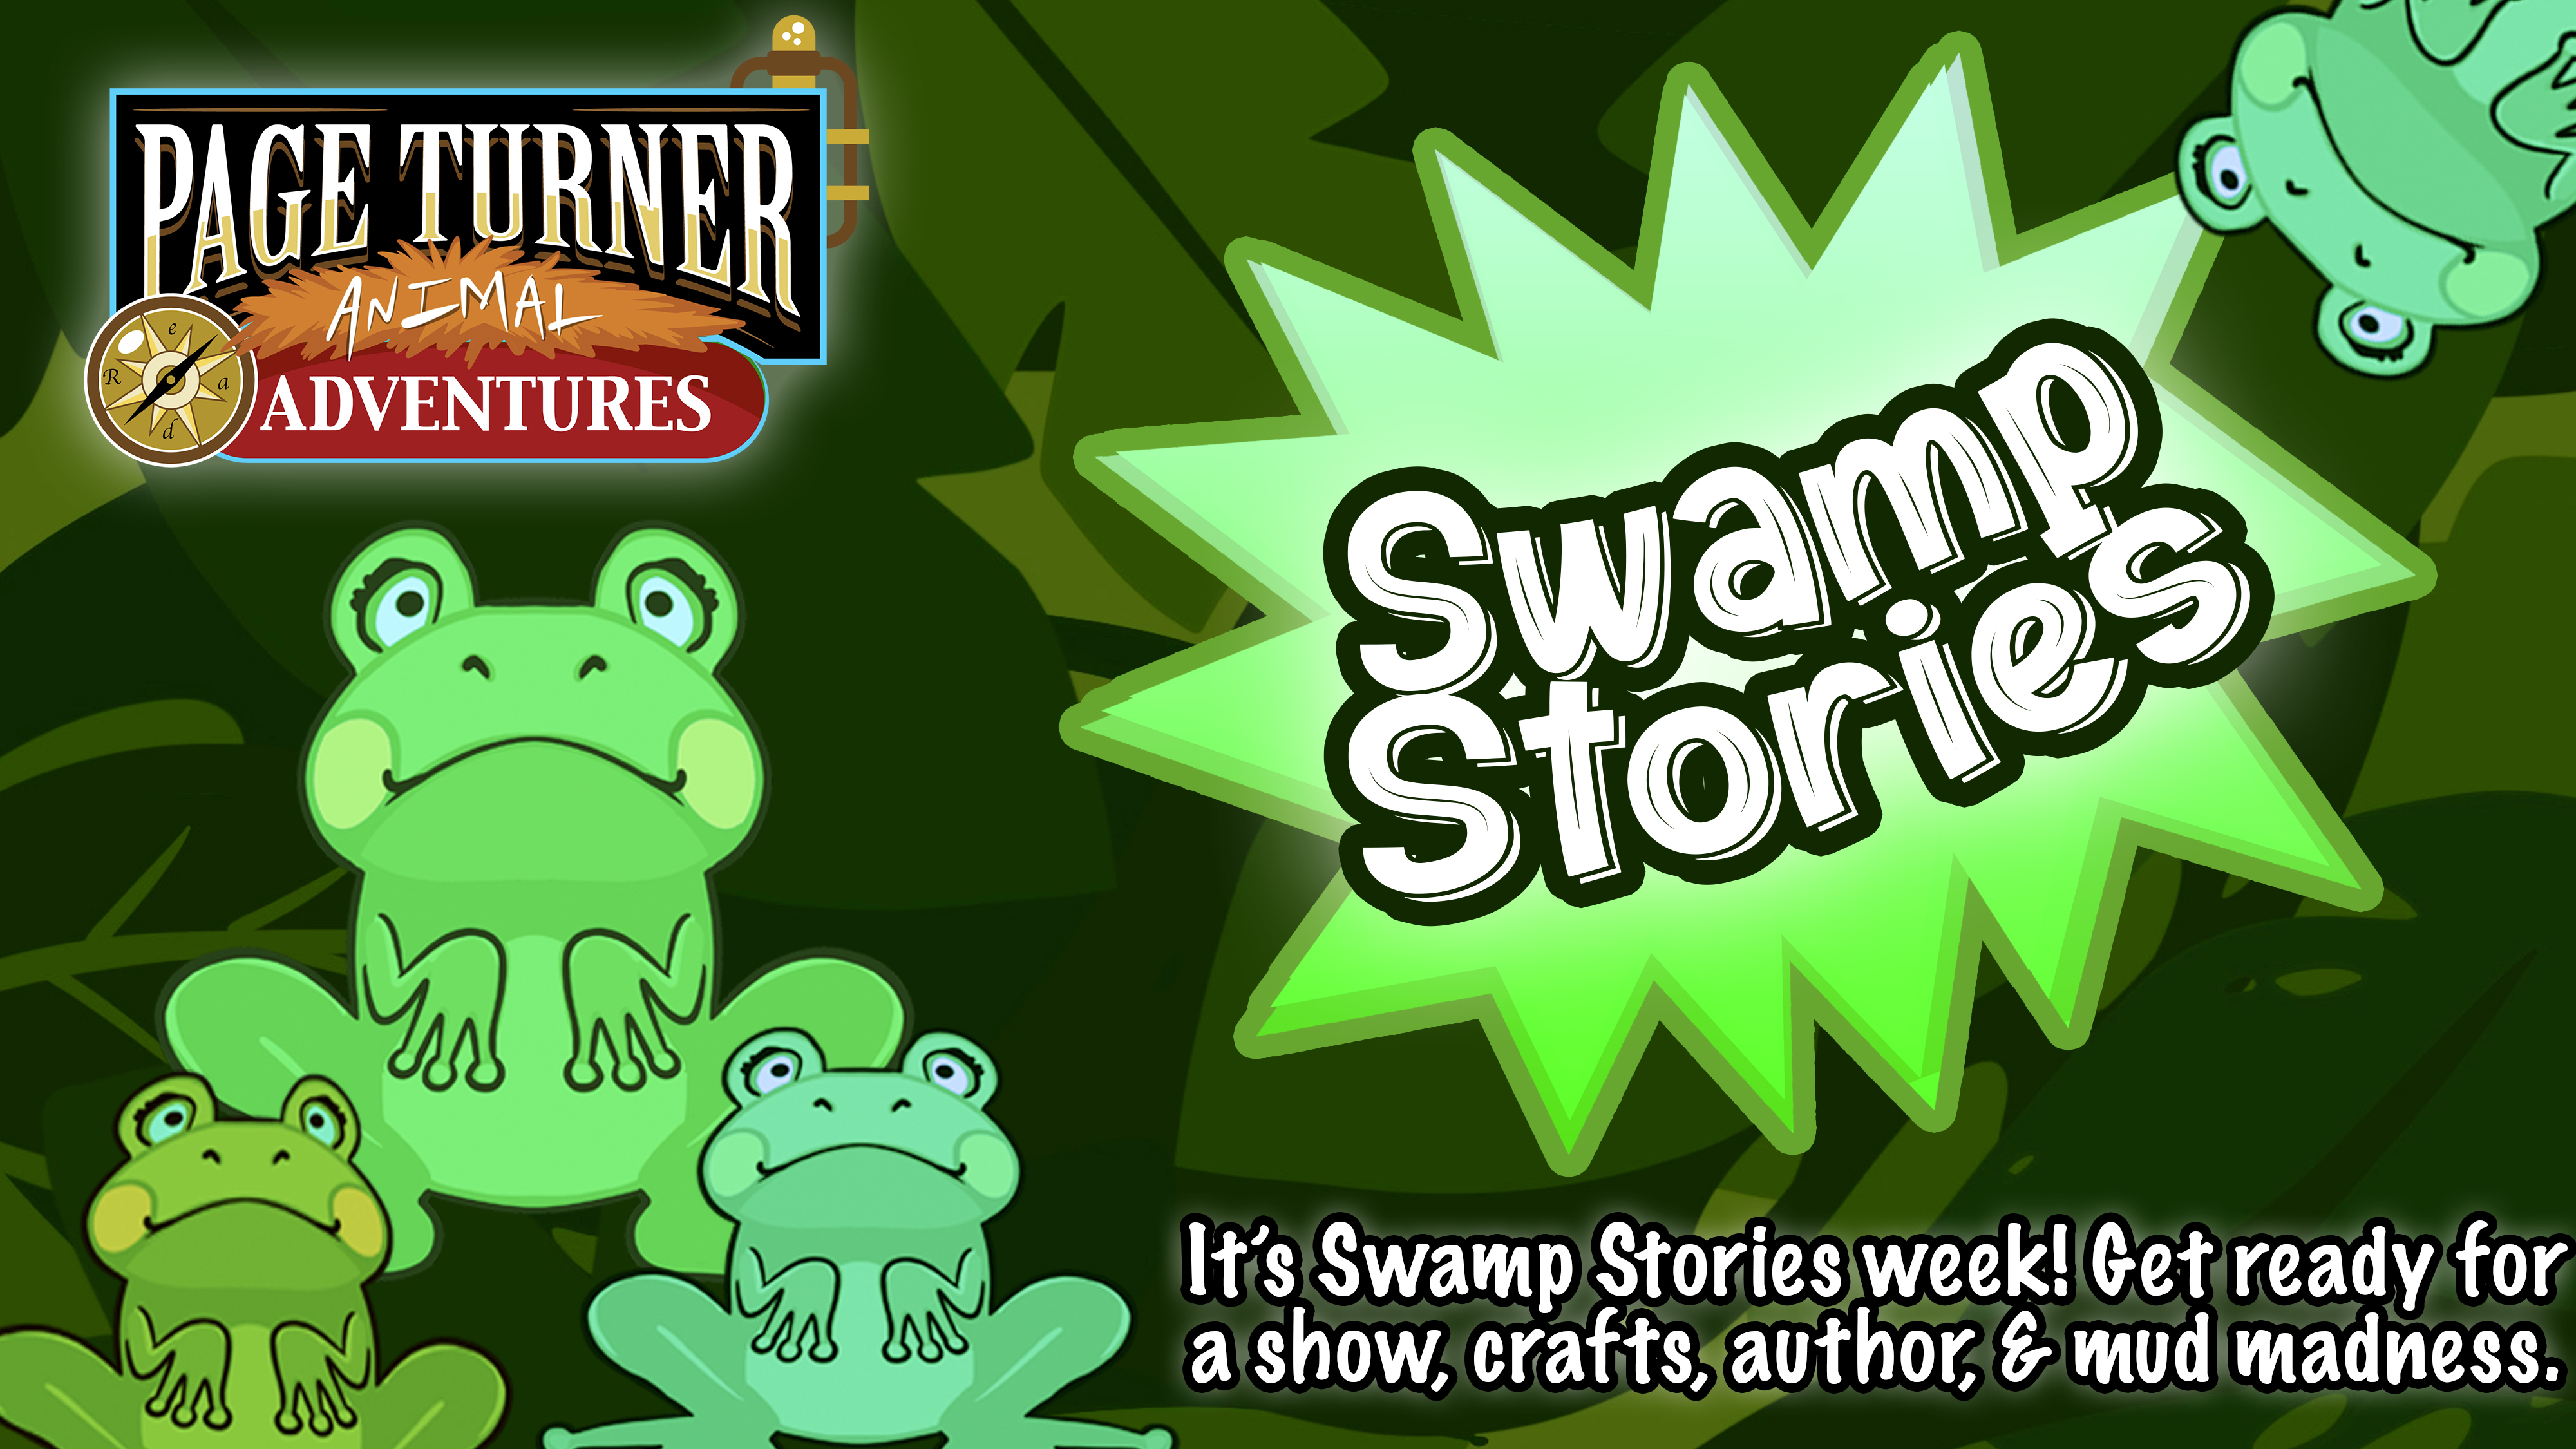 Swamp Stories week